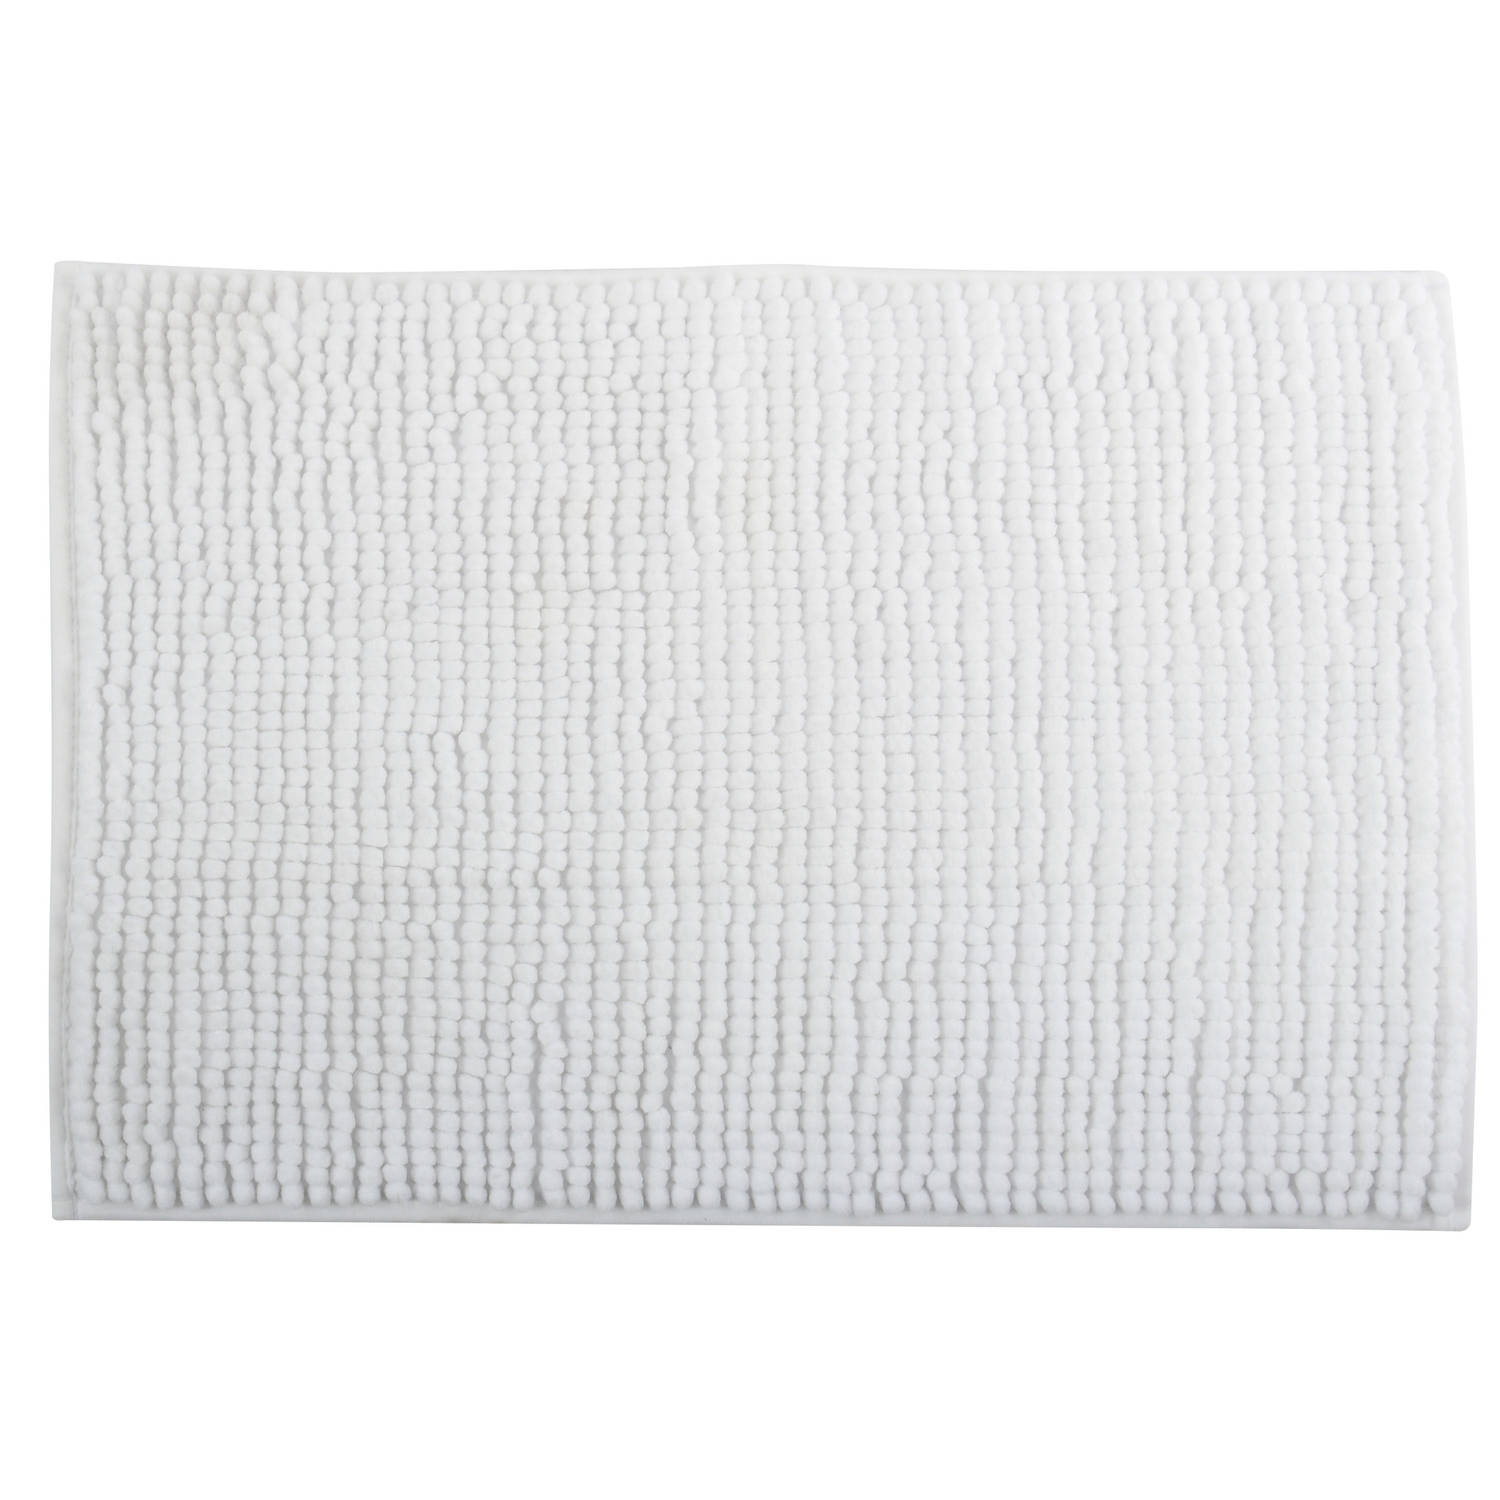 MSV Badkamerkleed-badmat tapijtje voor op de vloer ivoor wit 50 x 80 cm Microvezel Badmatjes